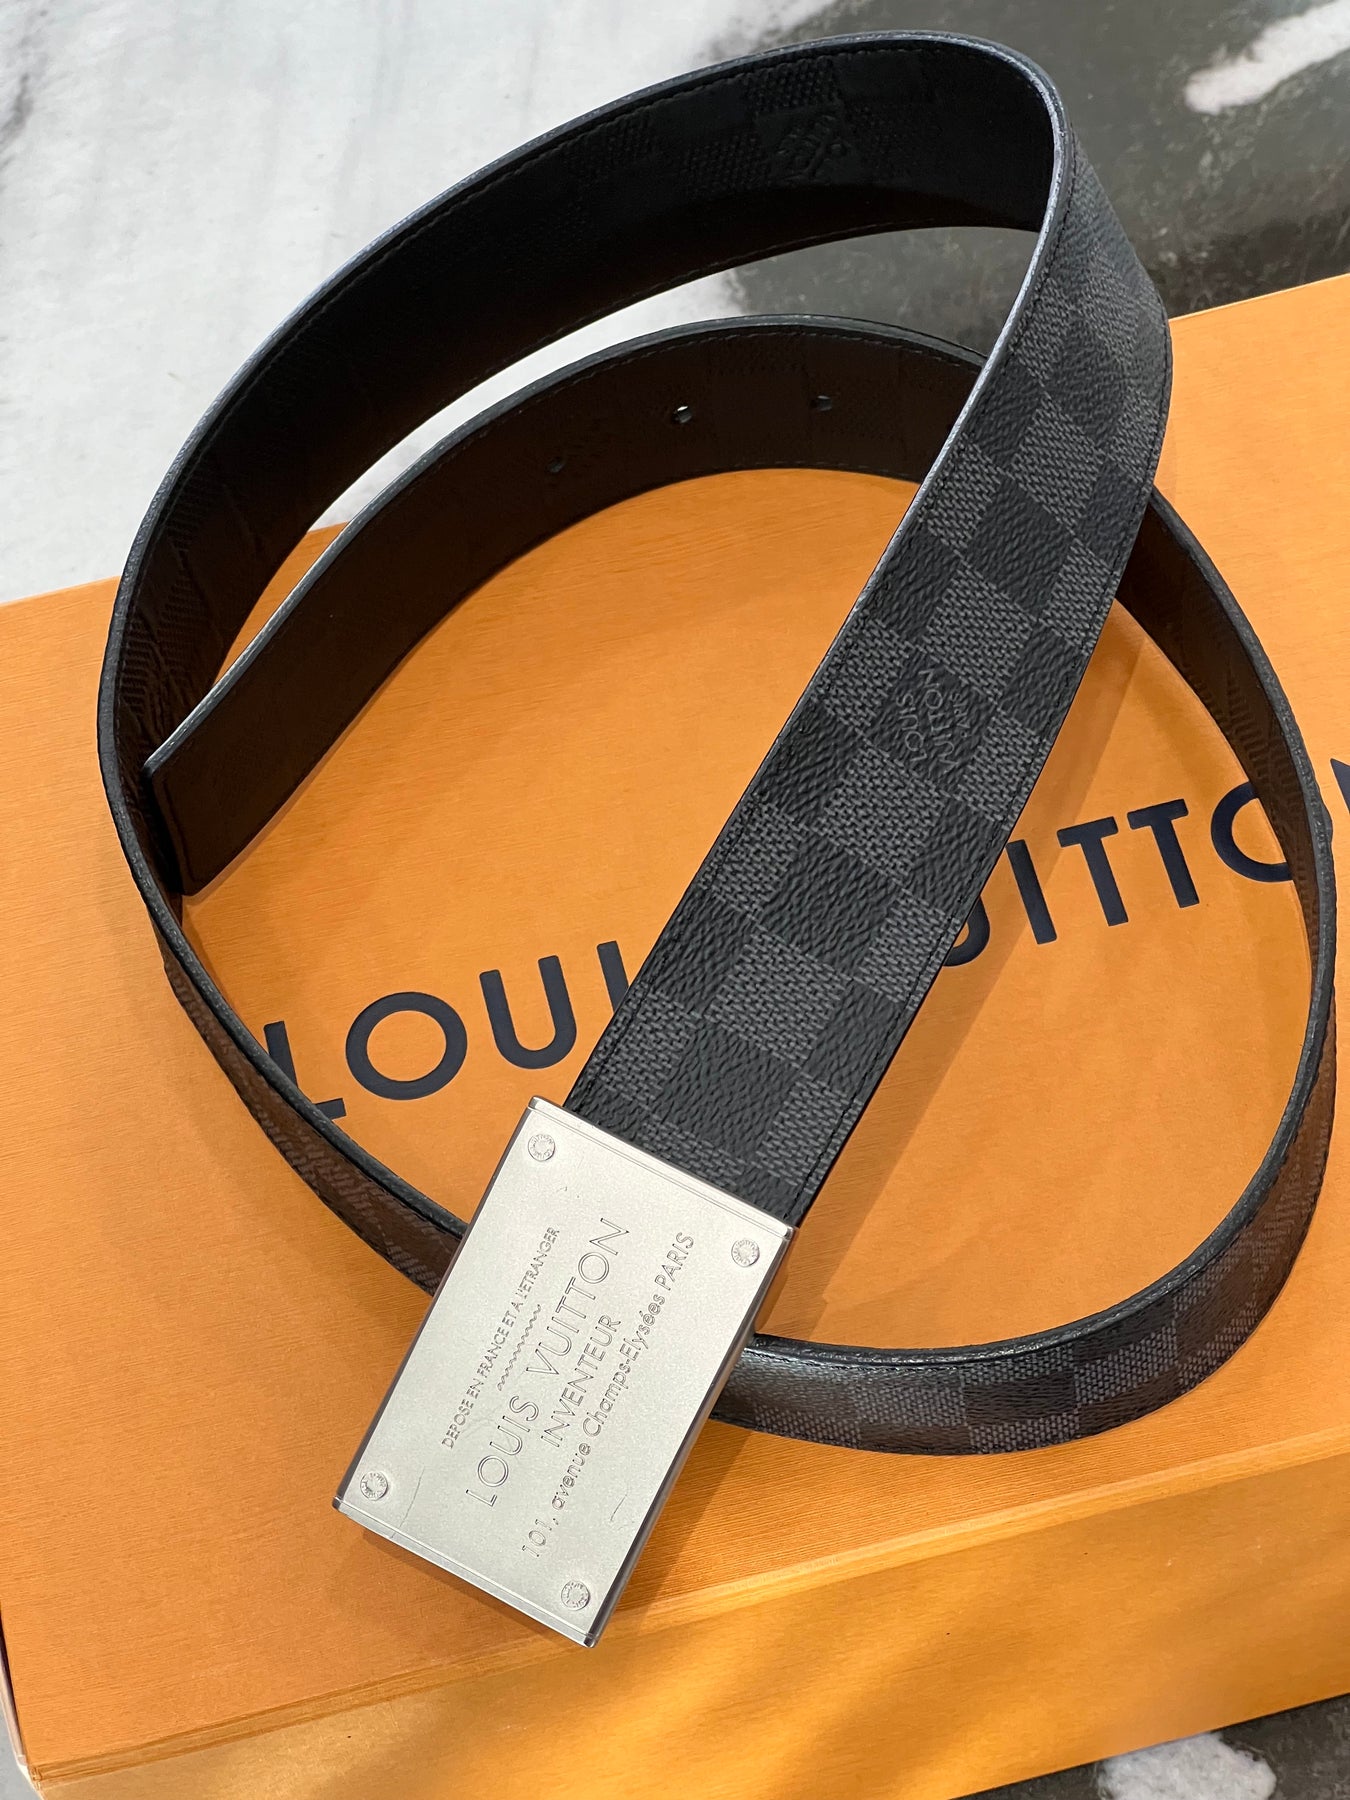 100% Authentic Damier Graphite 35mm Louis Vuitton Inventeur Reversible Belt